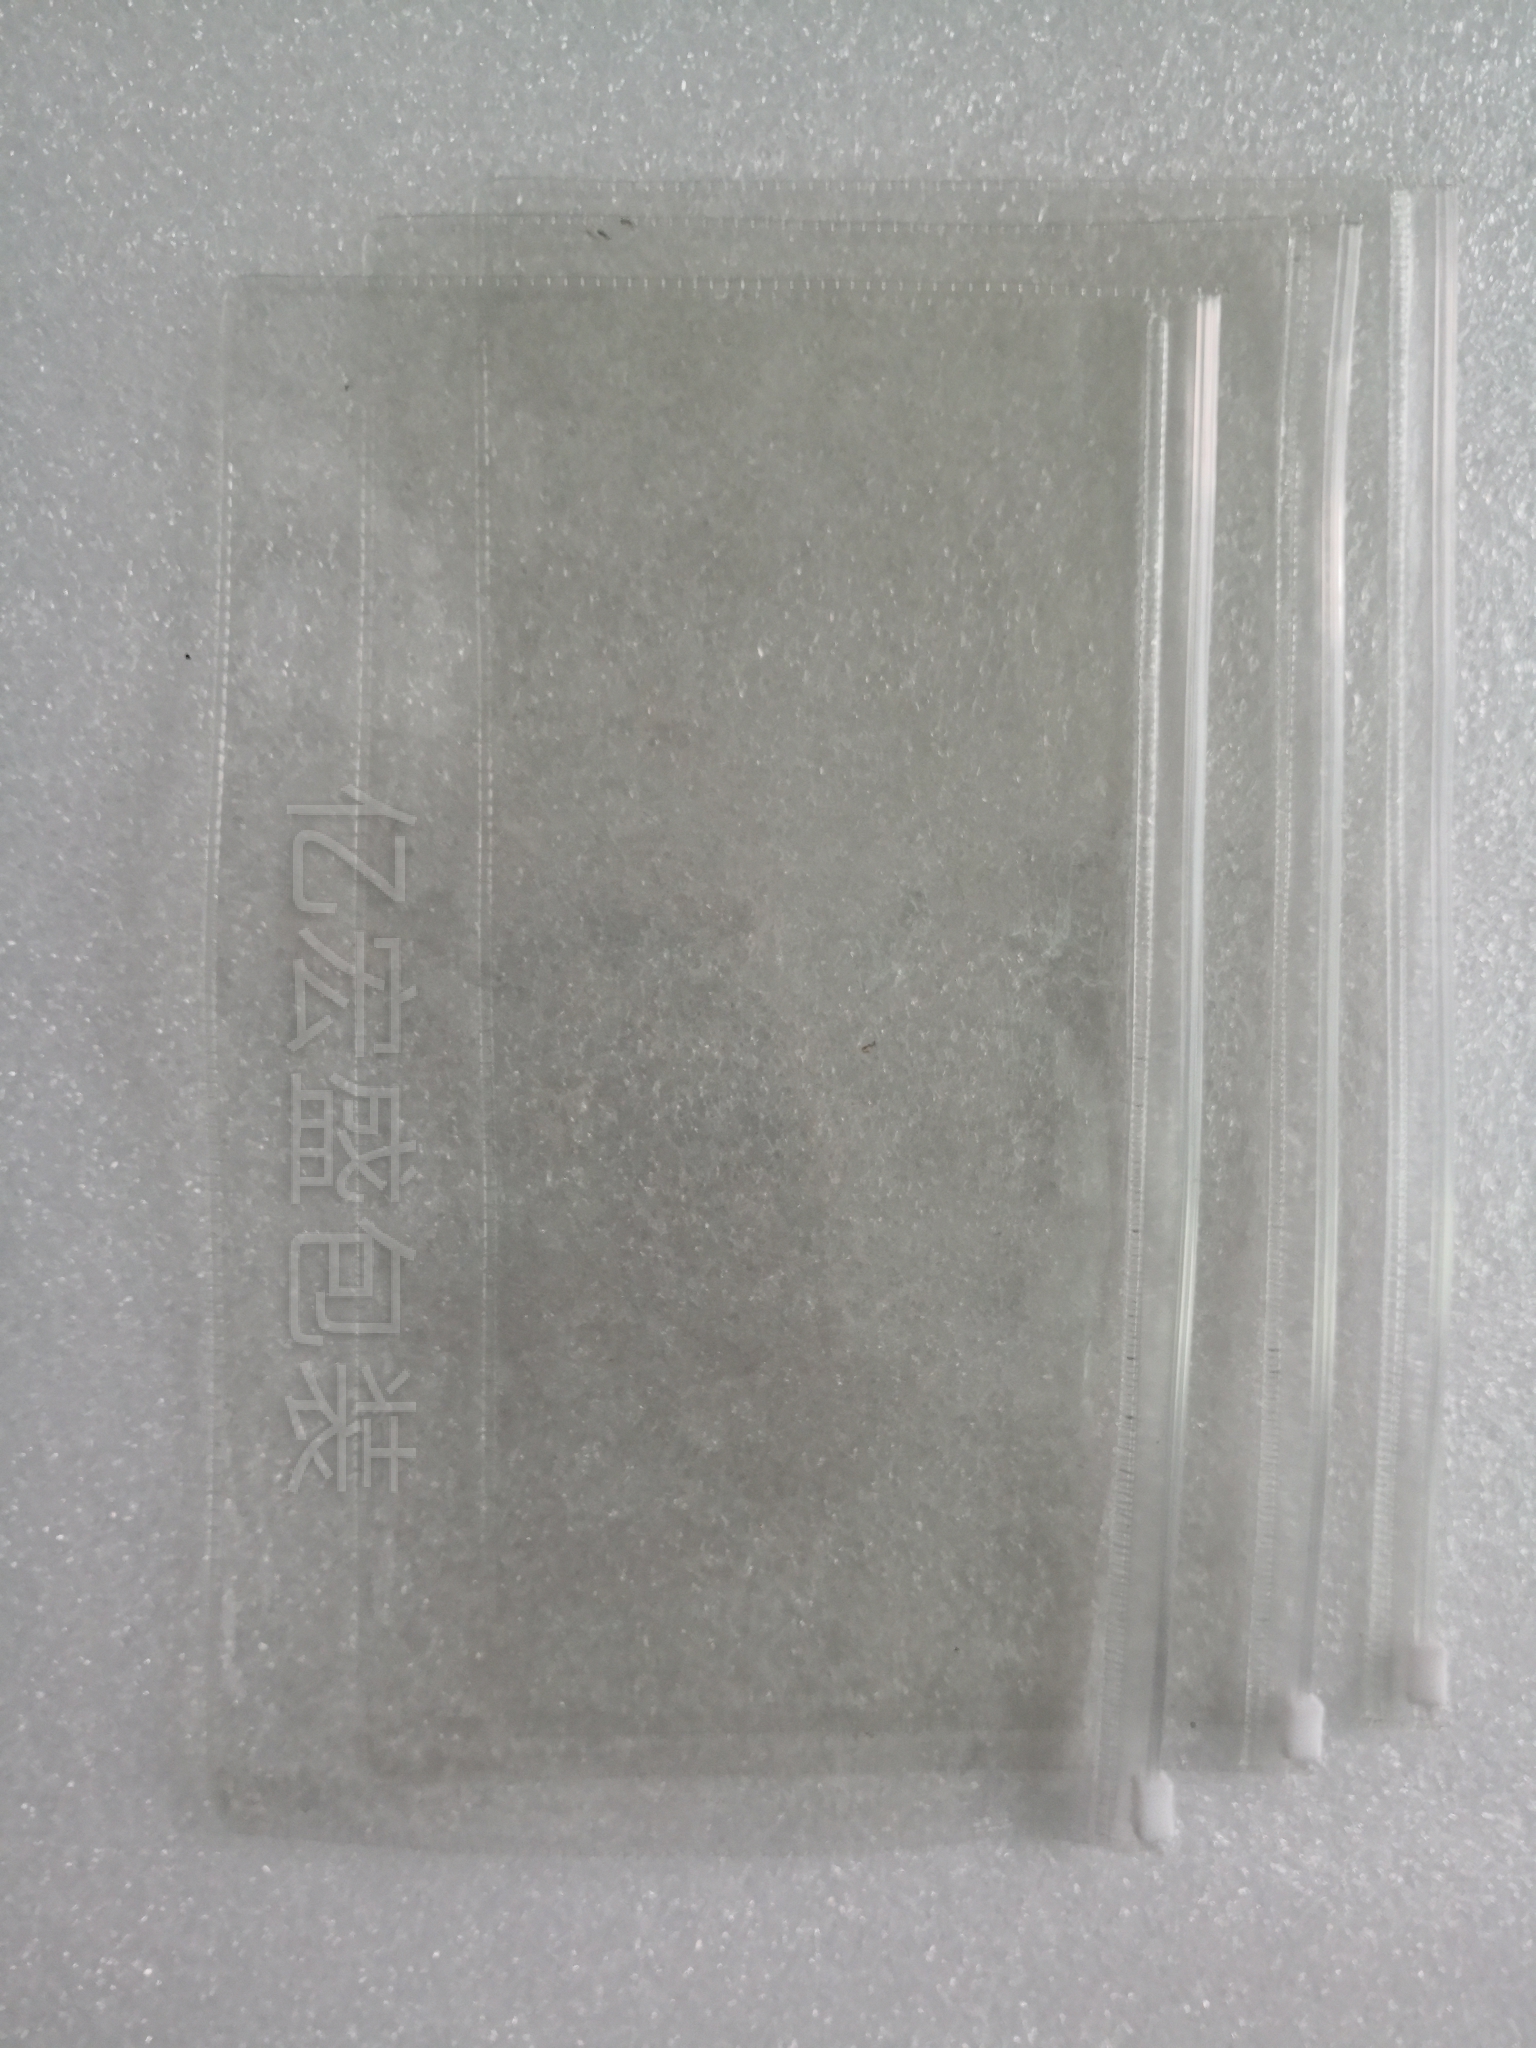 深圳市透明pe自封袋厂家定制 各种透明pe自封袋厂商_PE环保胶袋批发价格